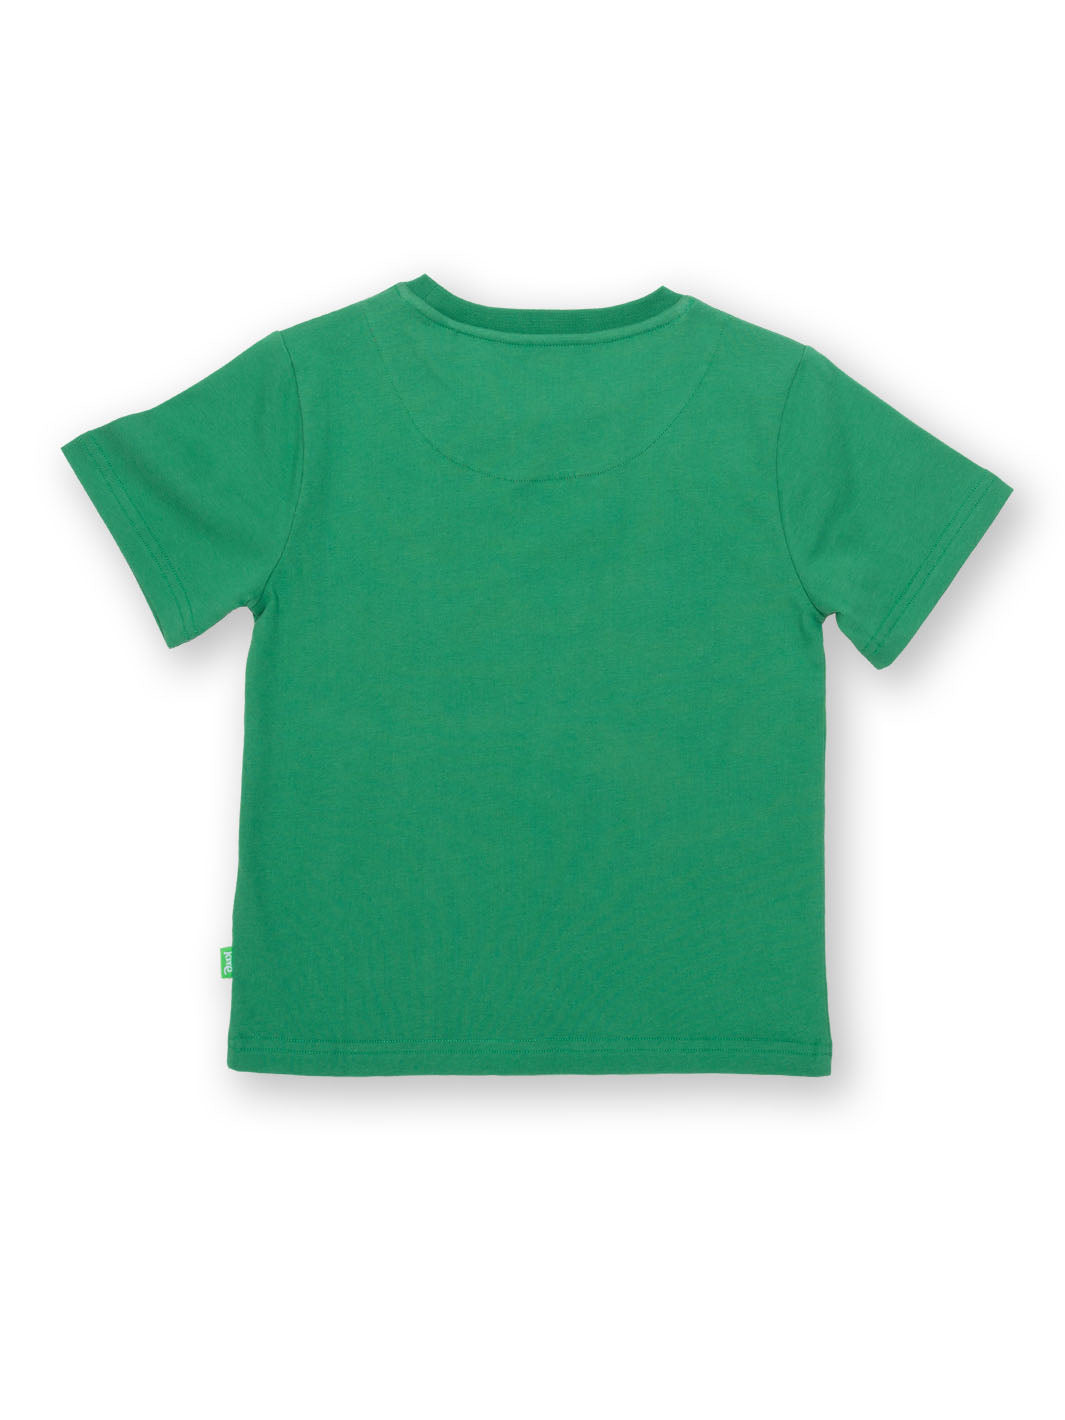 Kite Sport-A-Saurus Short Sleeve T-Shirt - Green